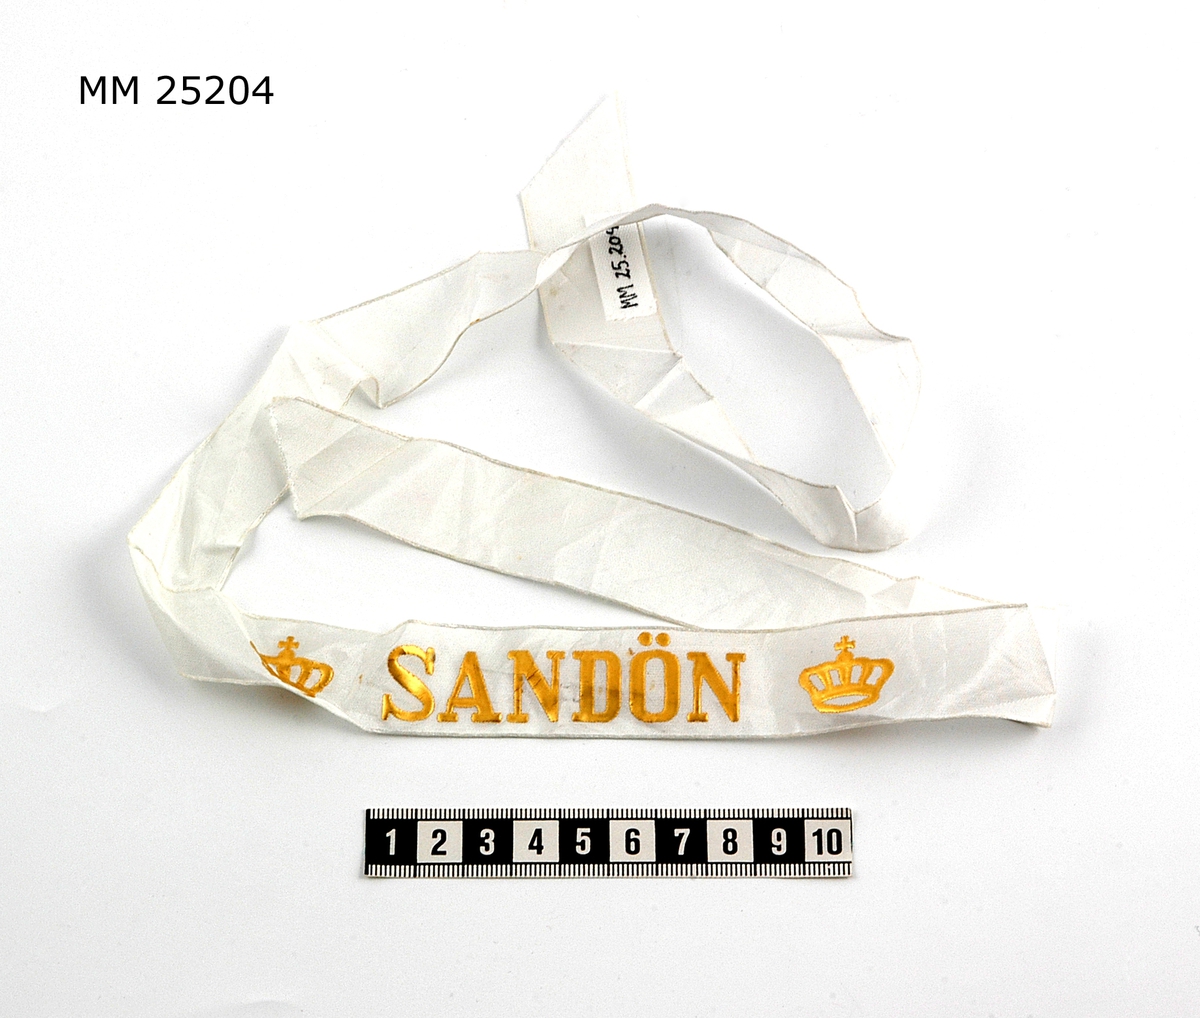 Mössband av sidenrips. Vit med text i guld: "Sandön" samt krona i guld på vardera sida om namnet.